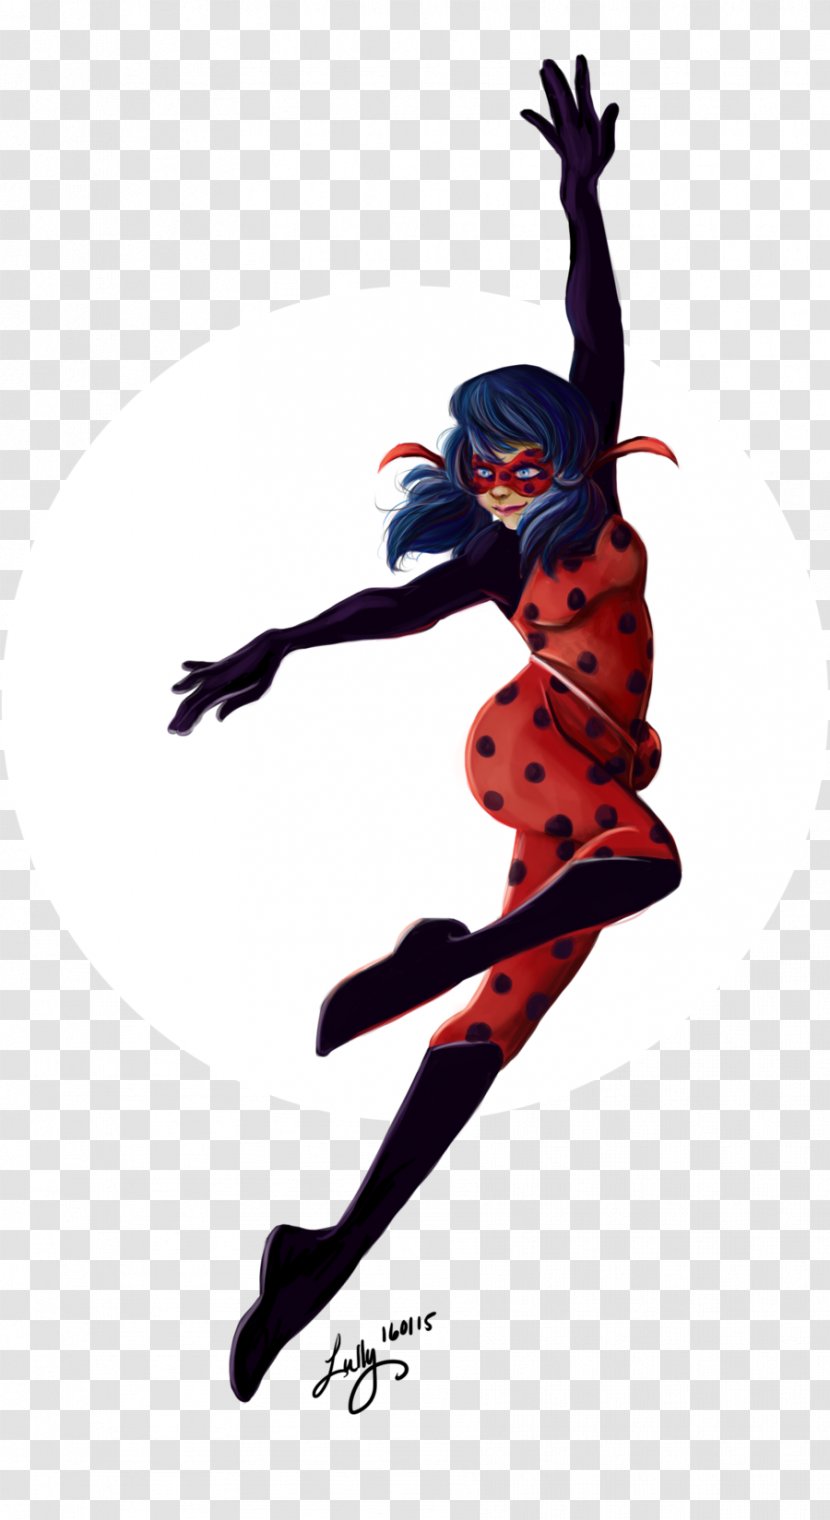 Fan Art DeviantArt - Dancer - Watercolor Ladybug Transparent PNG